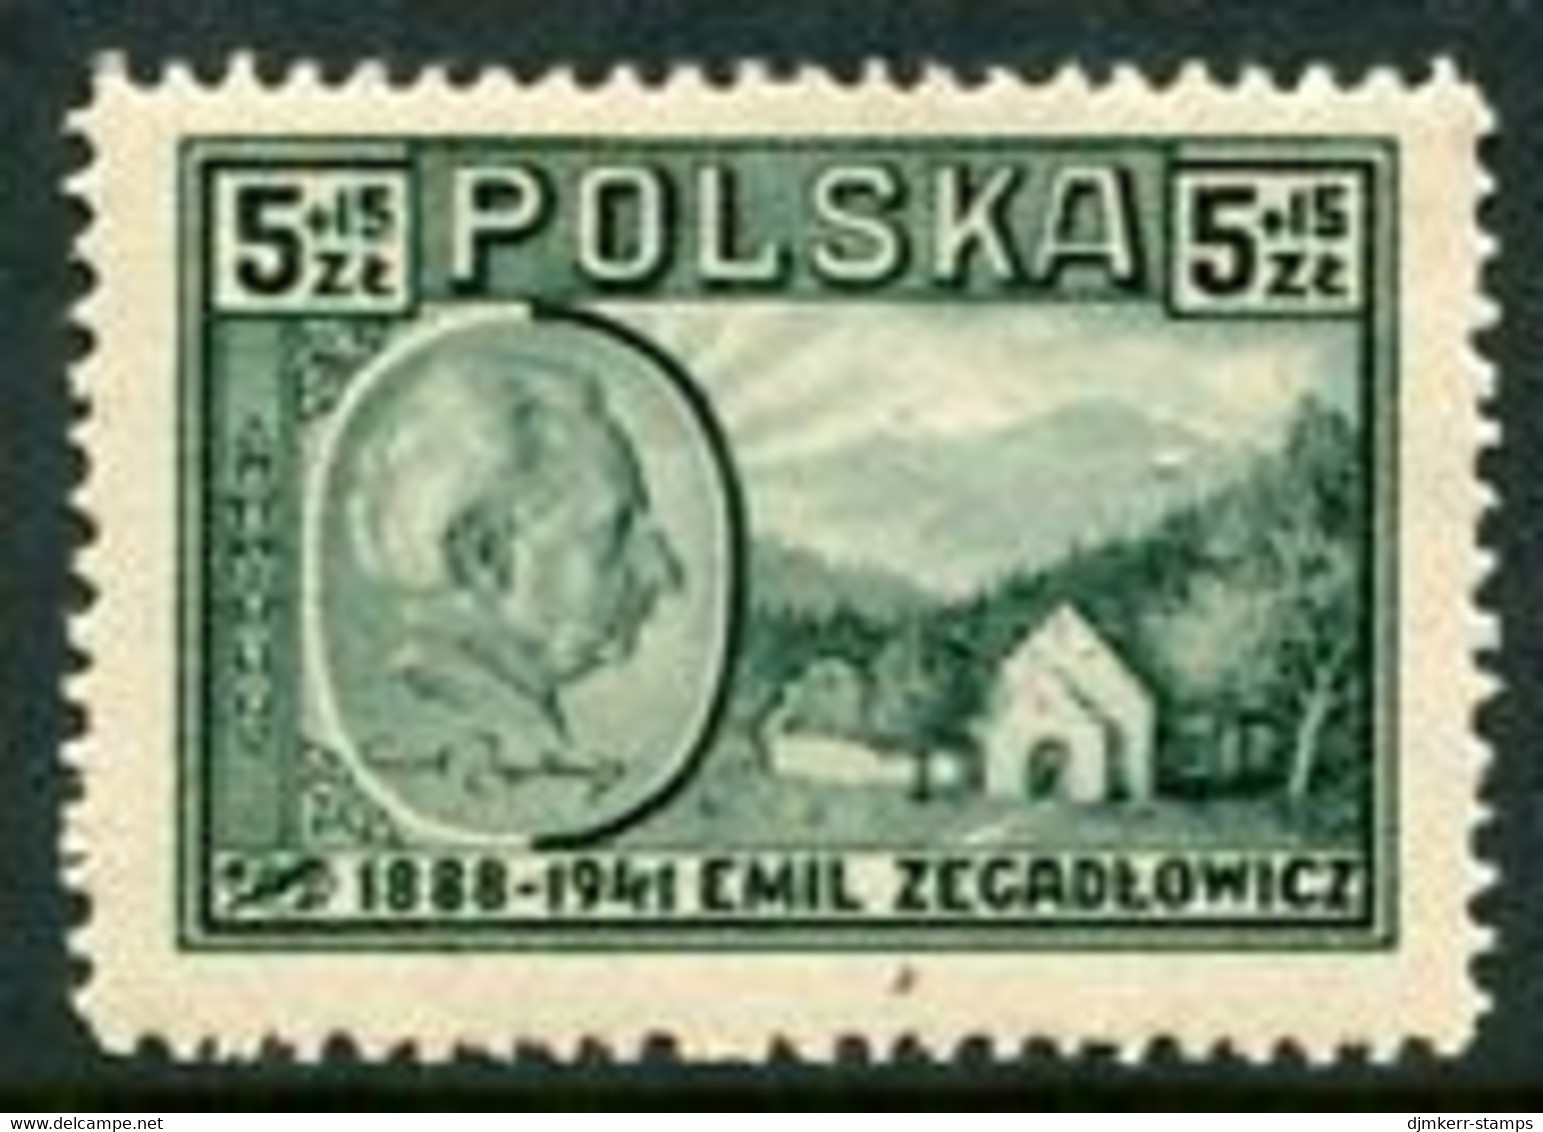 POLAND 1947 Zegadlowicz LHM / *.  Michel 453 - Ungebraucht